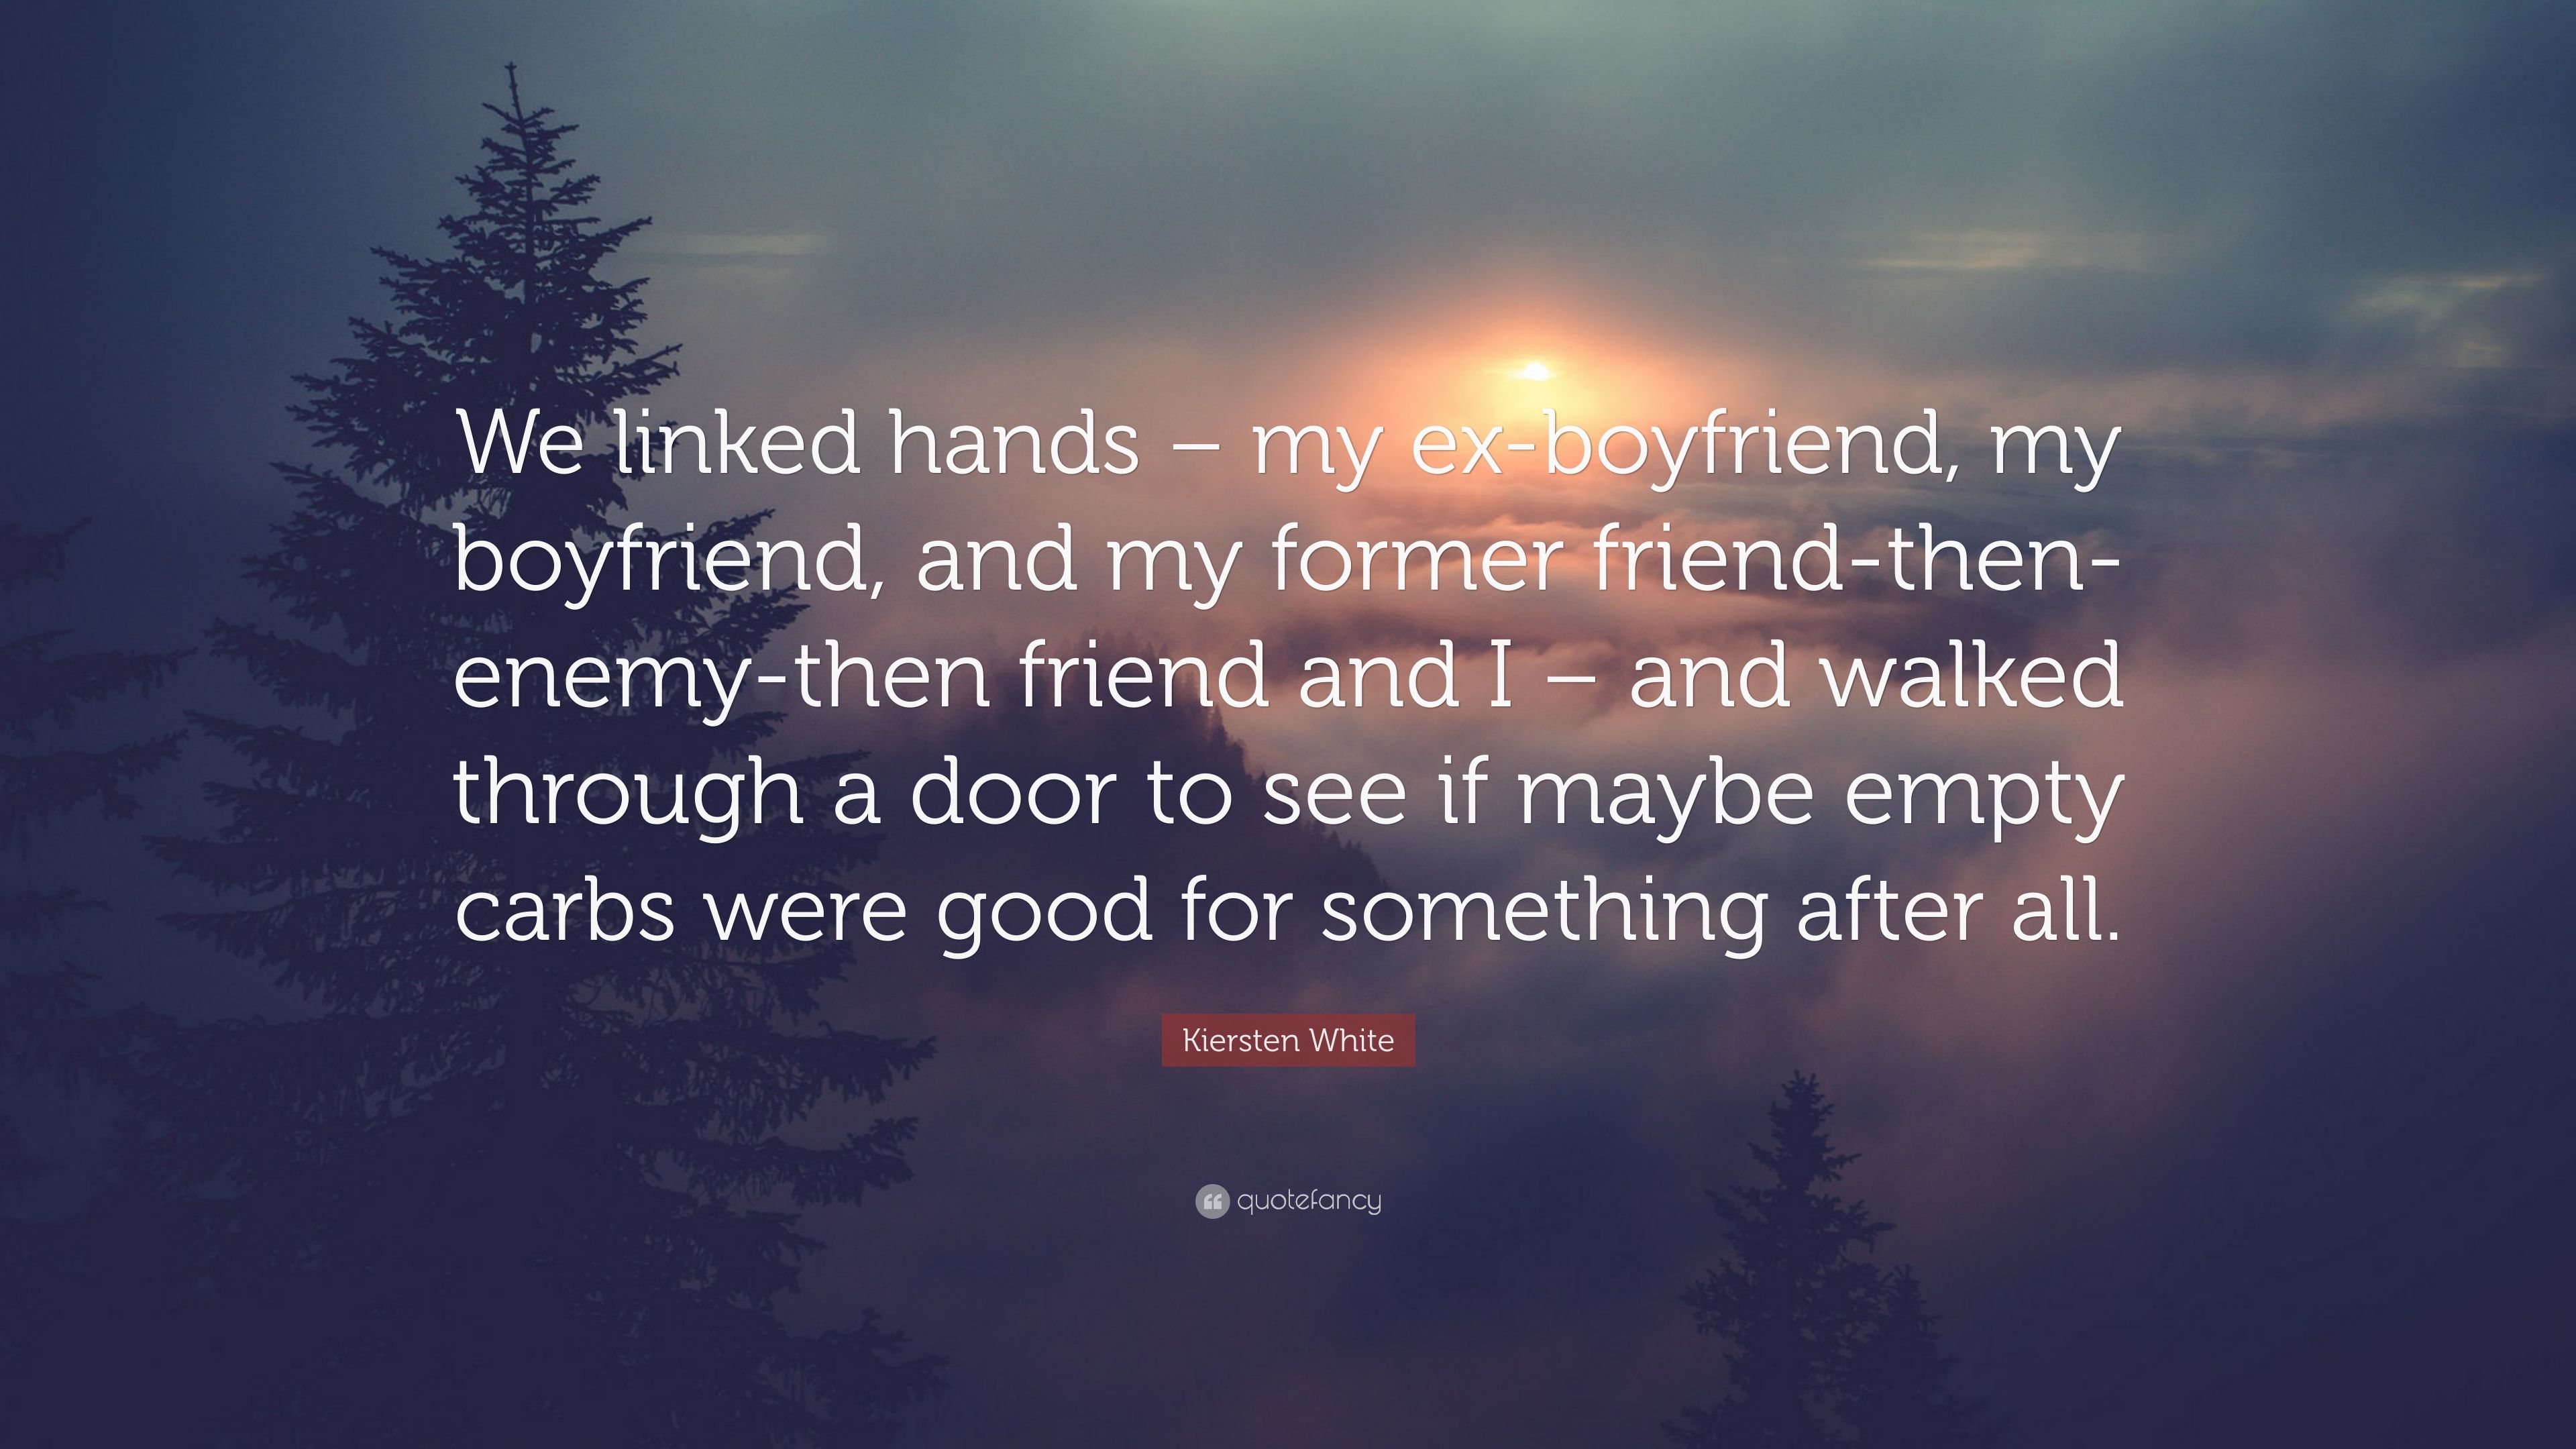 Kiersten White Quote: “We linked hands